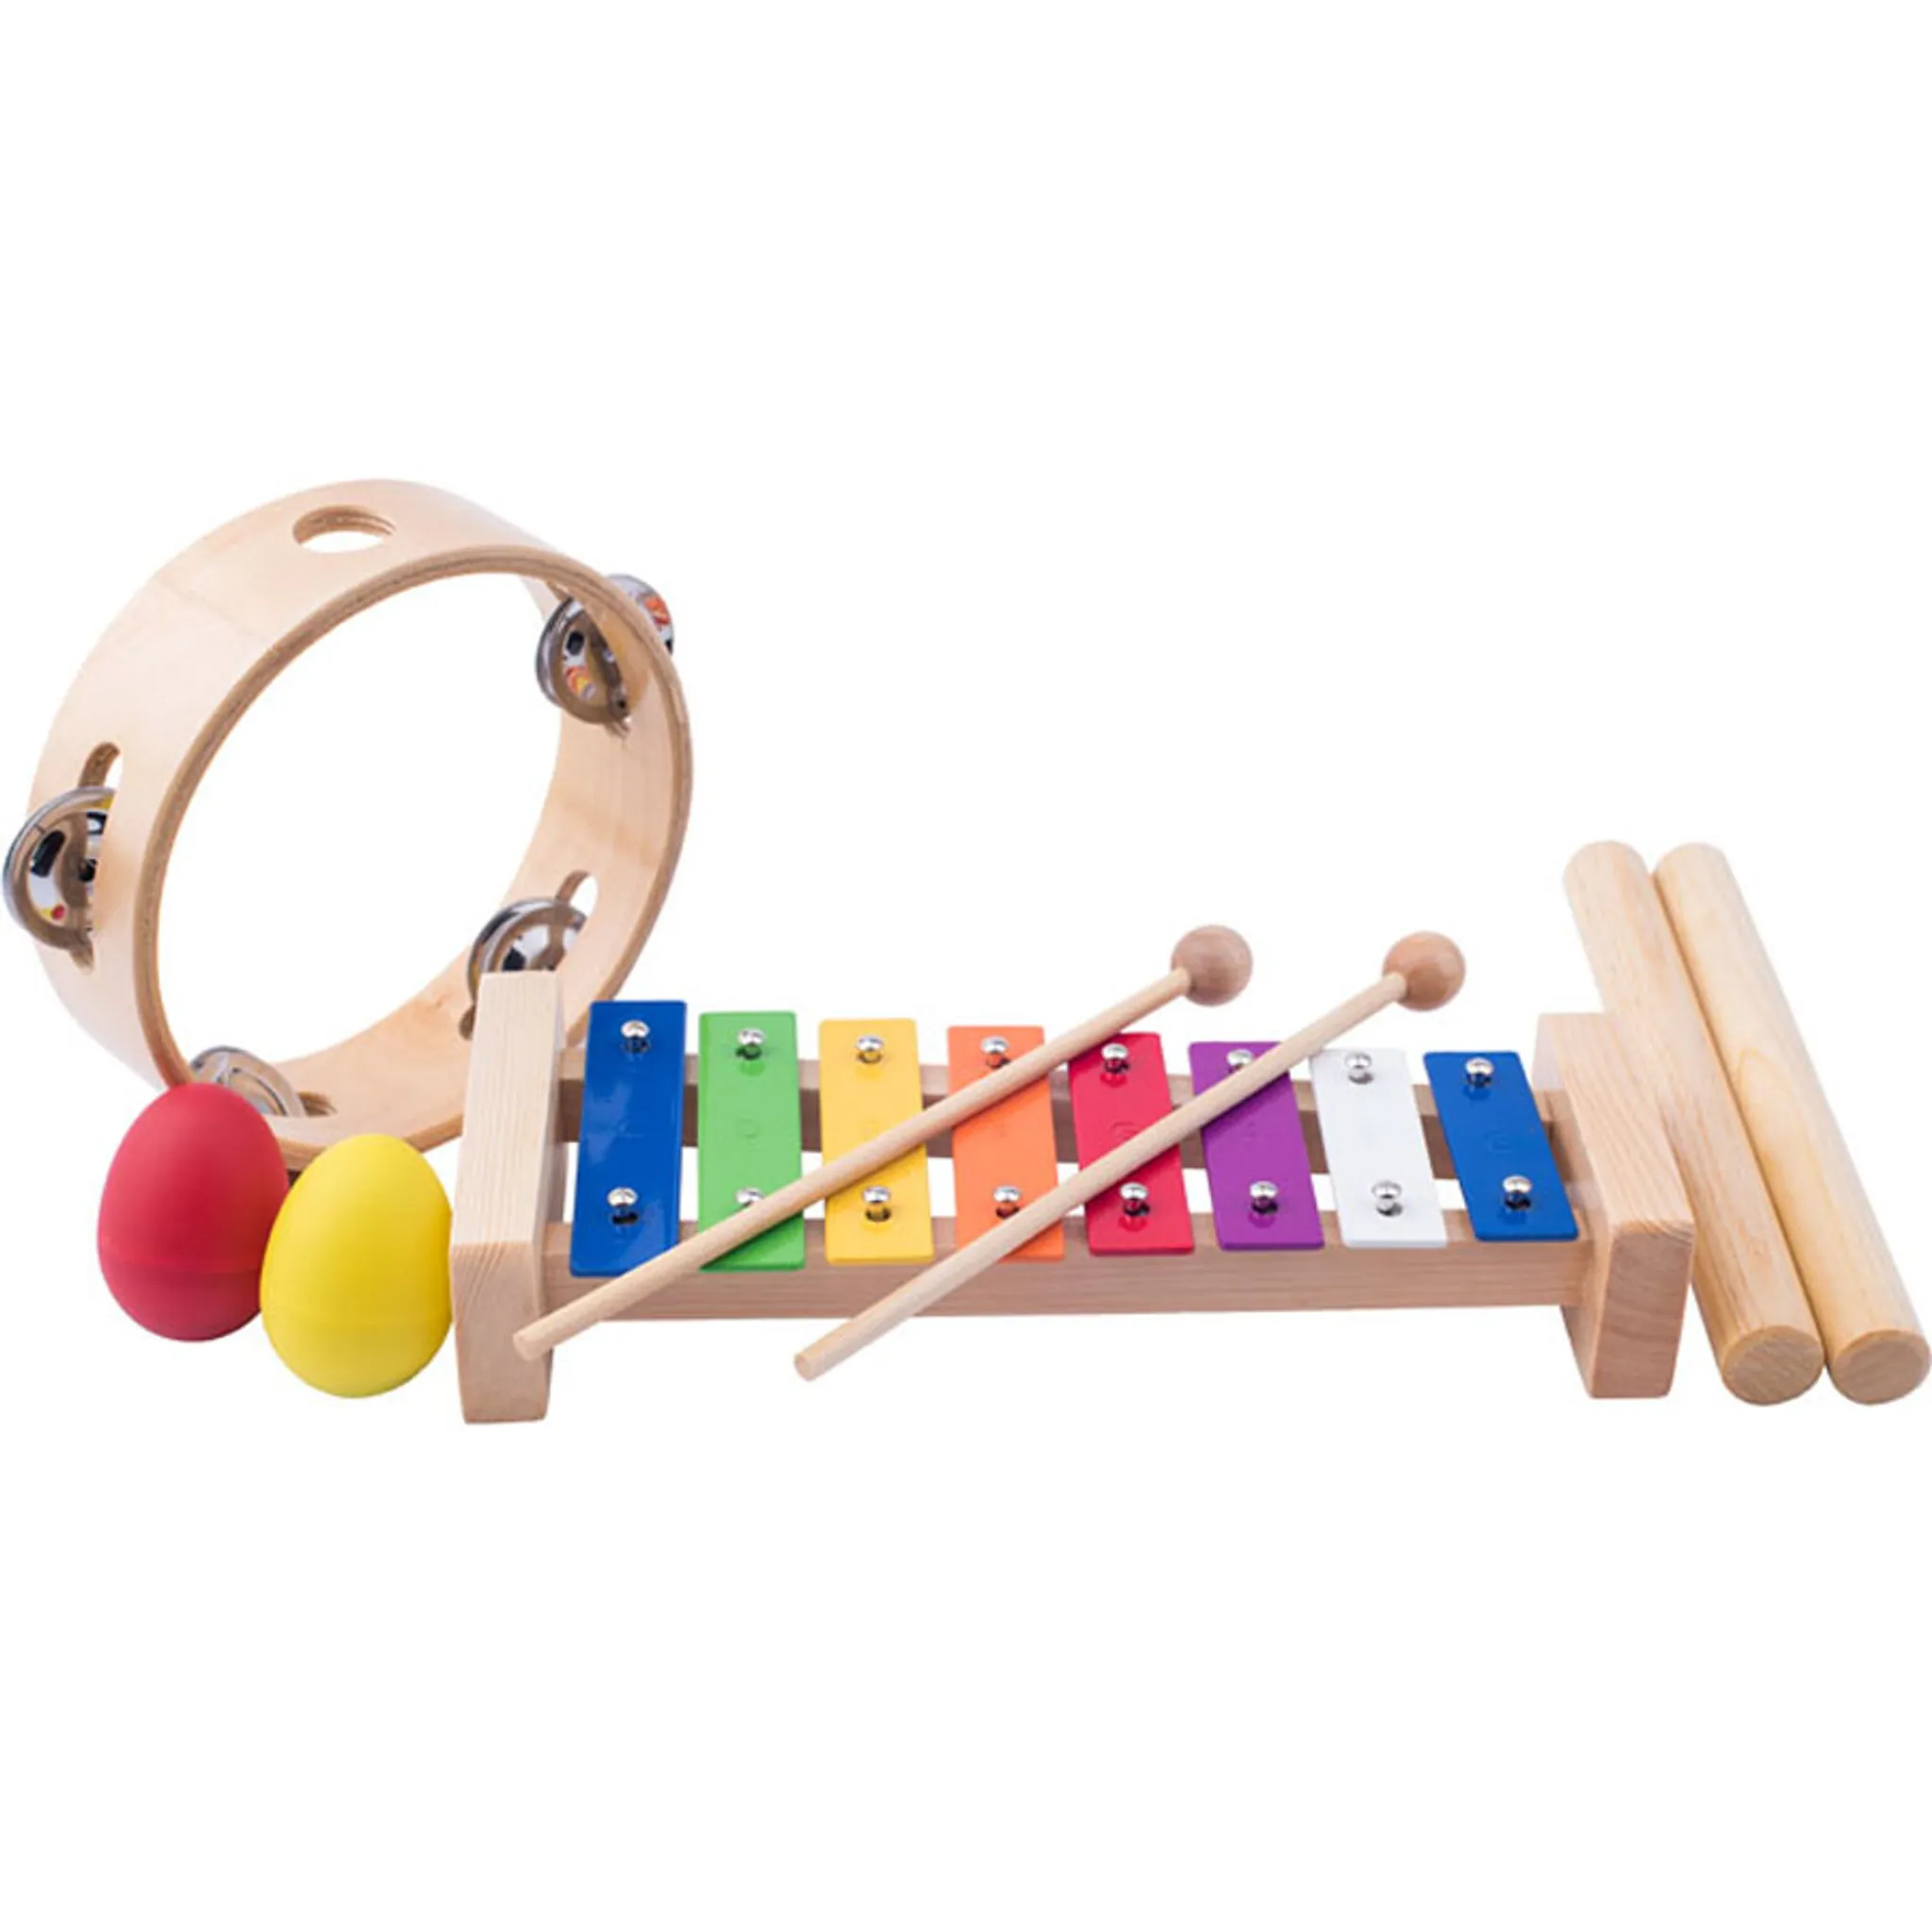 Tamburin Tambourine Handtrommel Musik Instrument Holz Spielzeug für Kinder